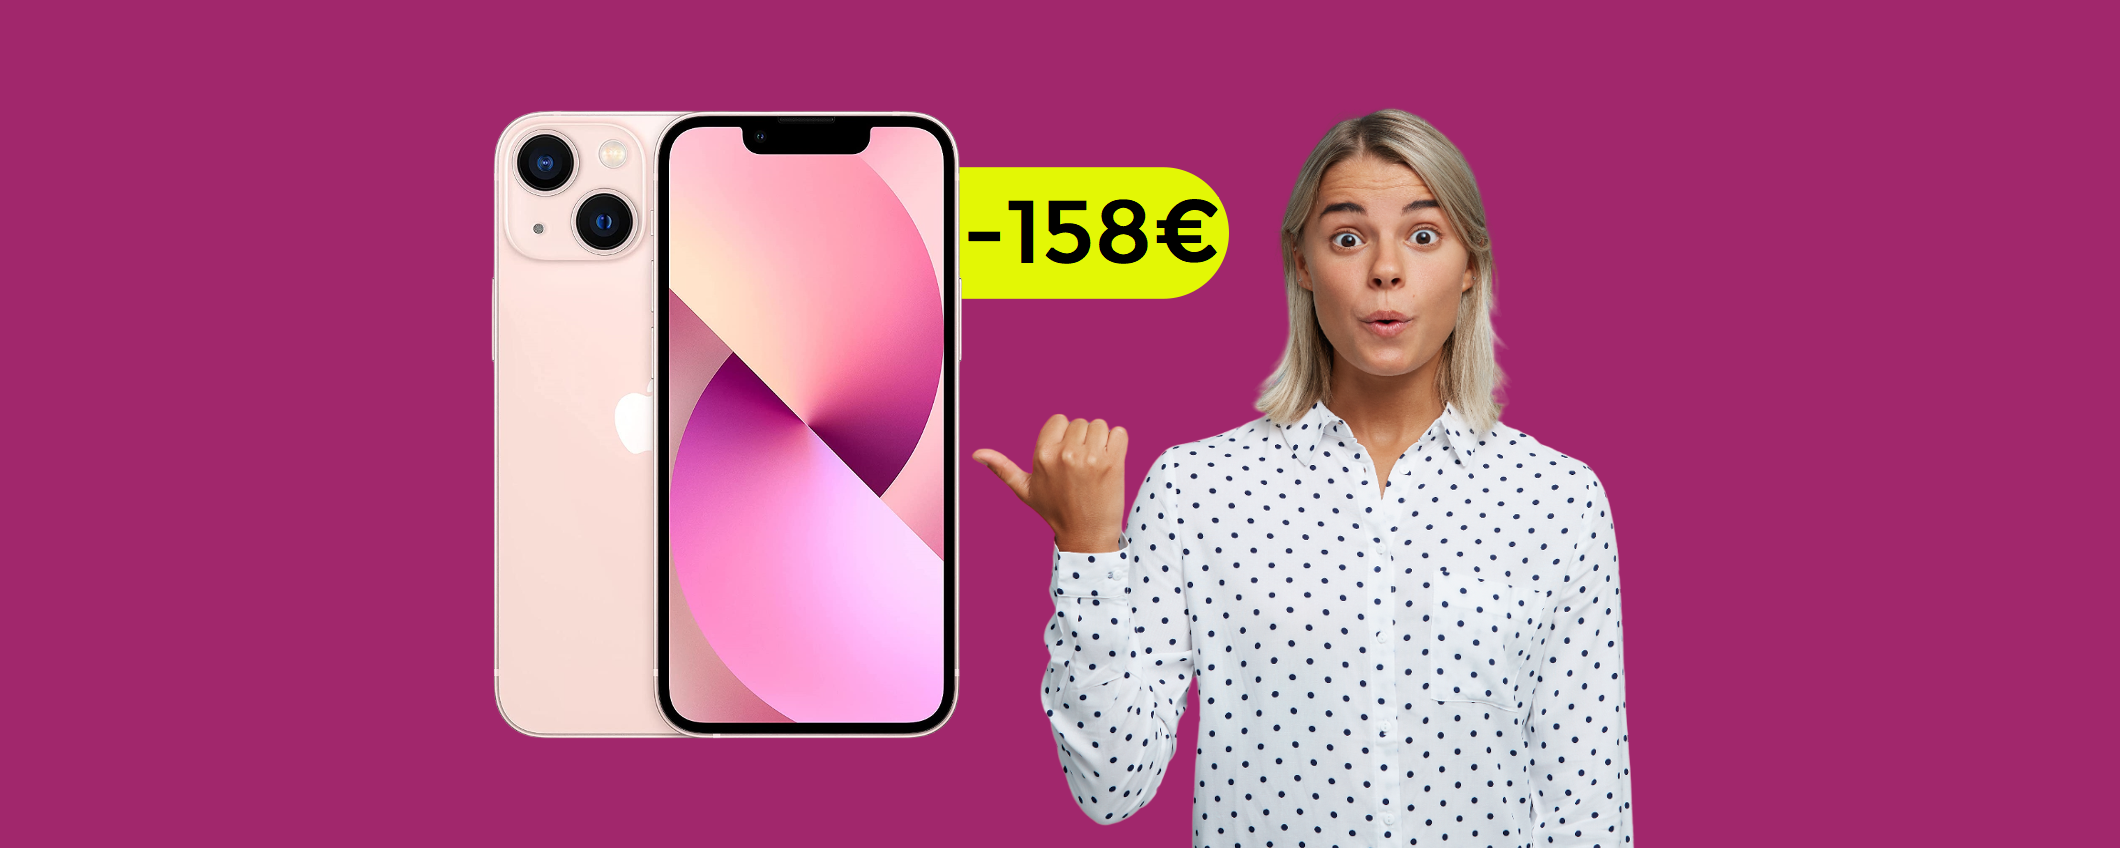 iPhone 13 mini: con questo sconto a sorpresa, l'affare è servito (-158€)